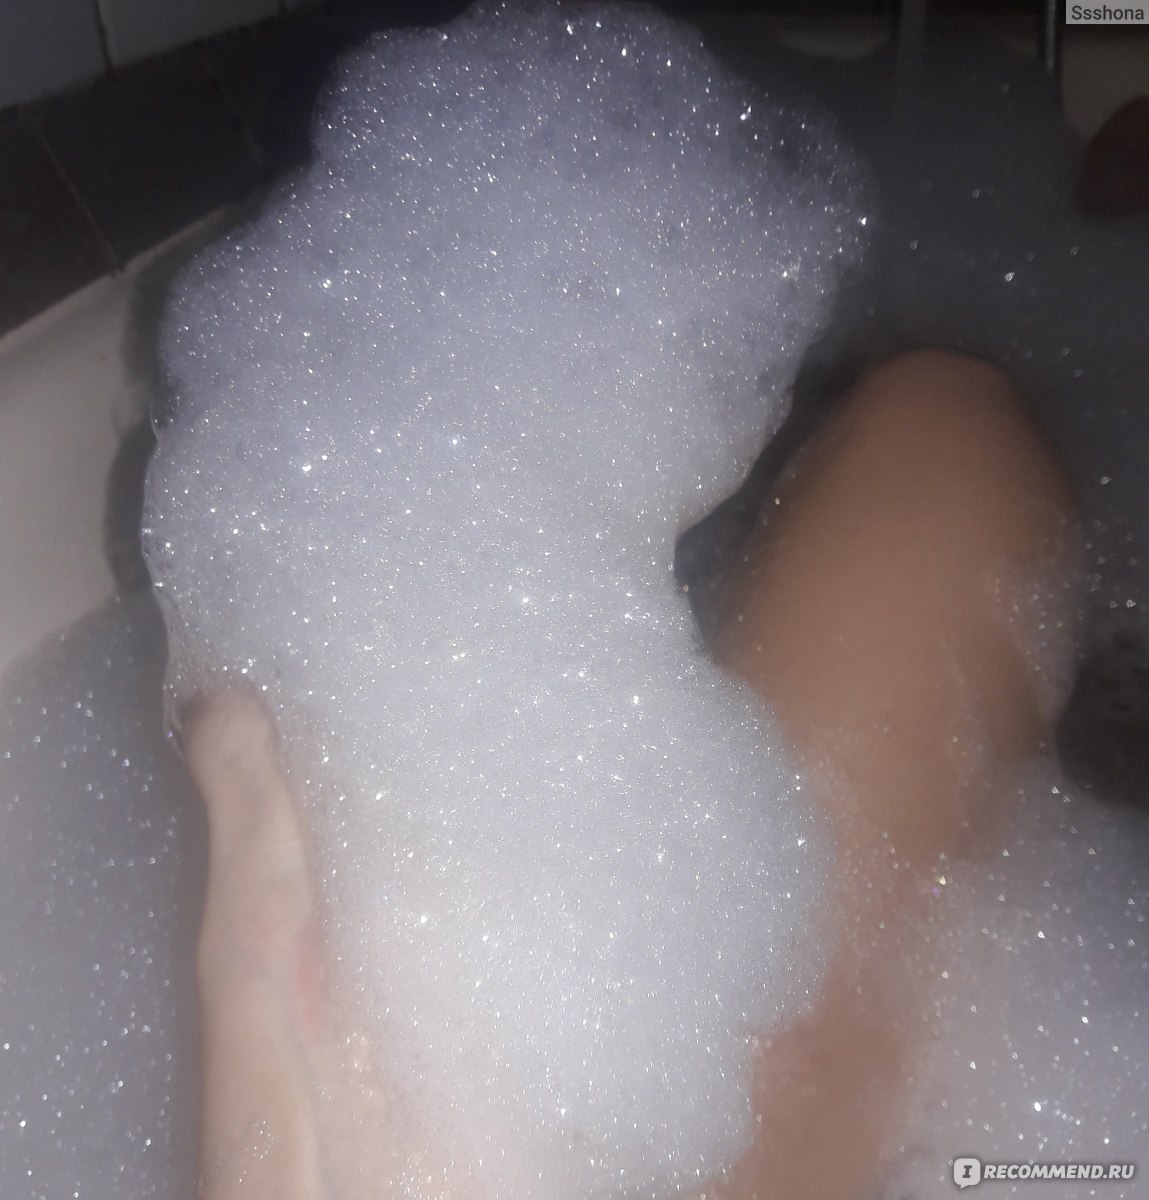 фото ног в ванне